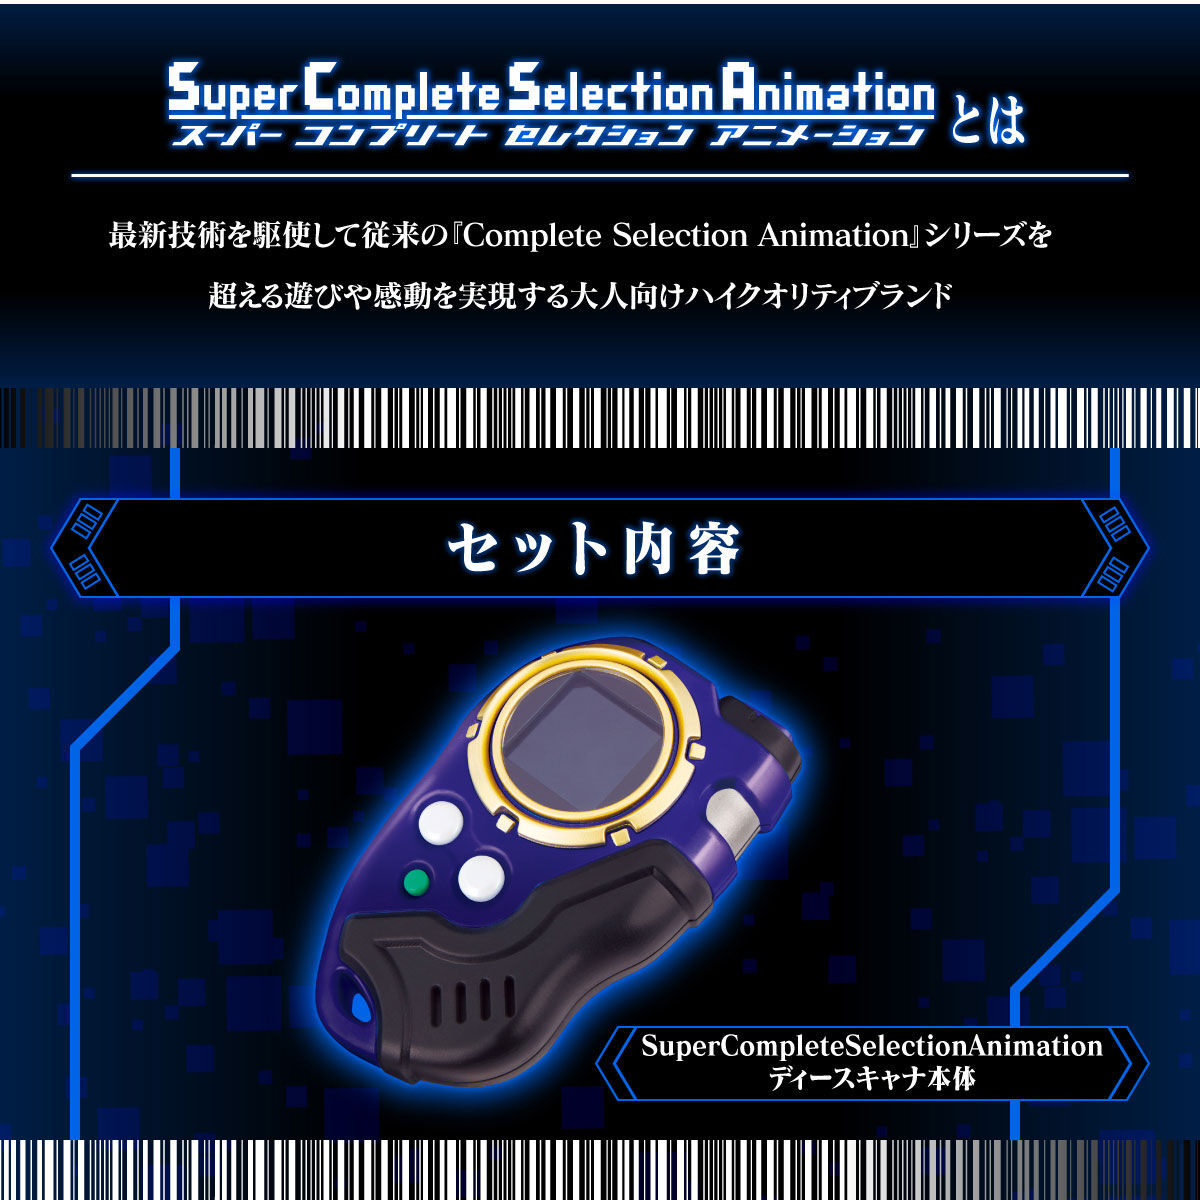 【限定販売】デジモンフロンティア Super Complete Selection Animation『ディースキャナver.ULTIMATE RED』変身なりきり玩具-012